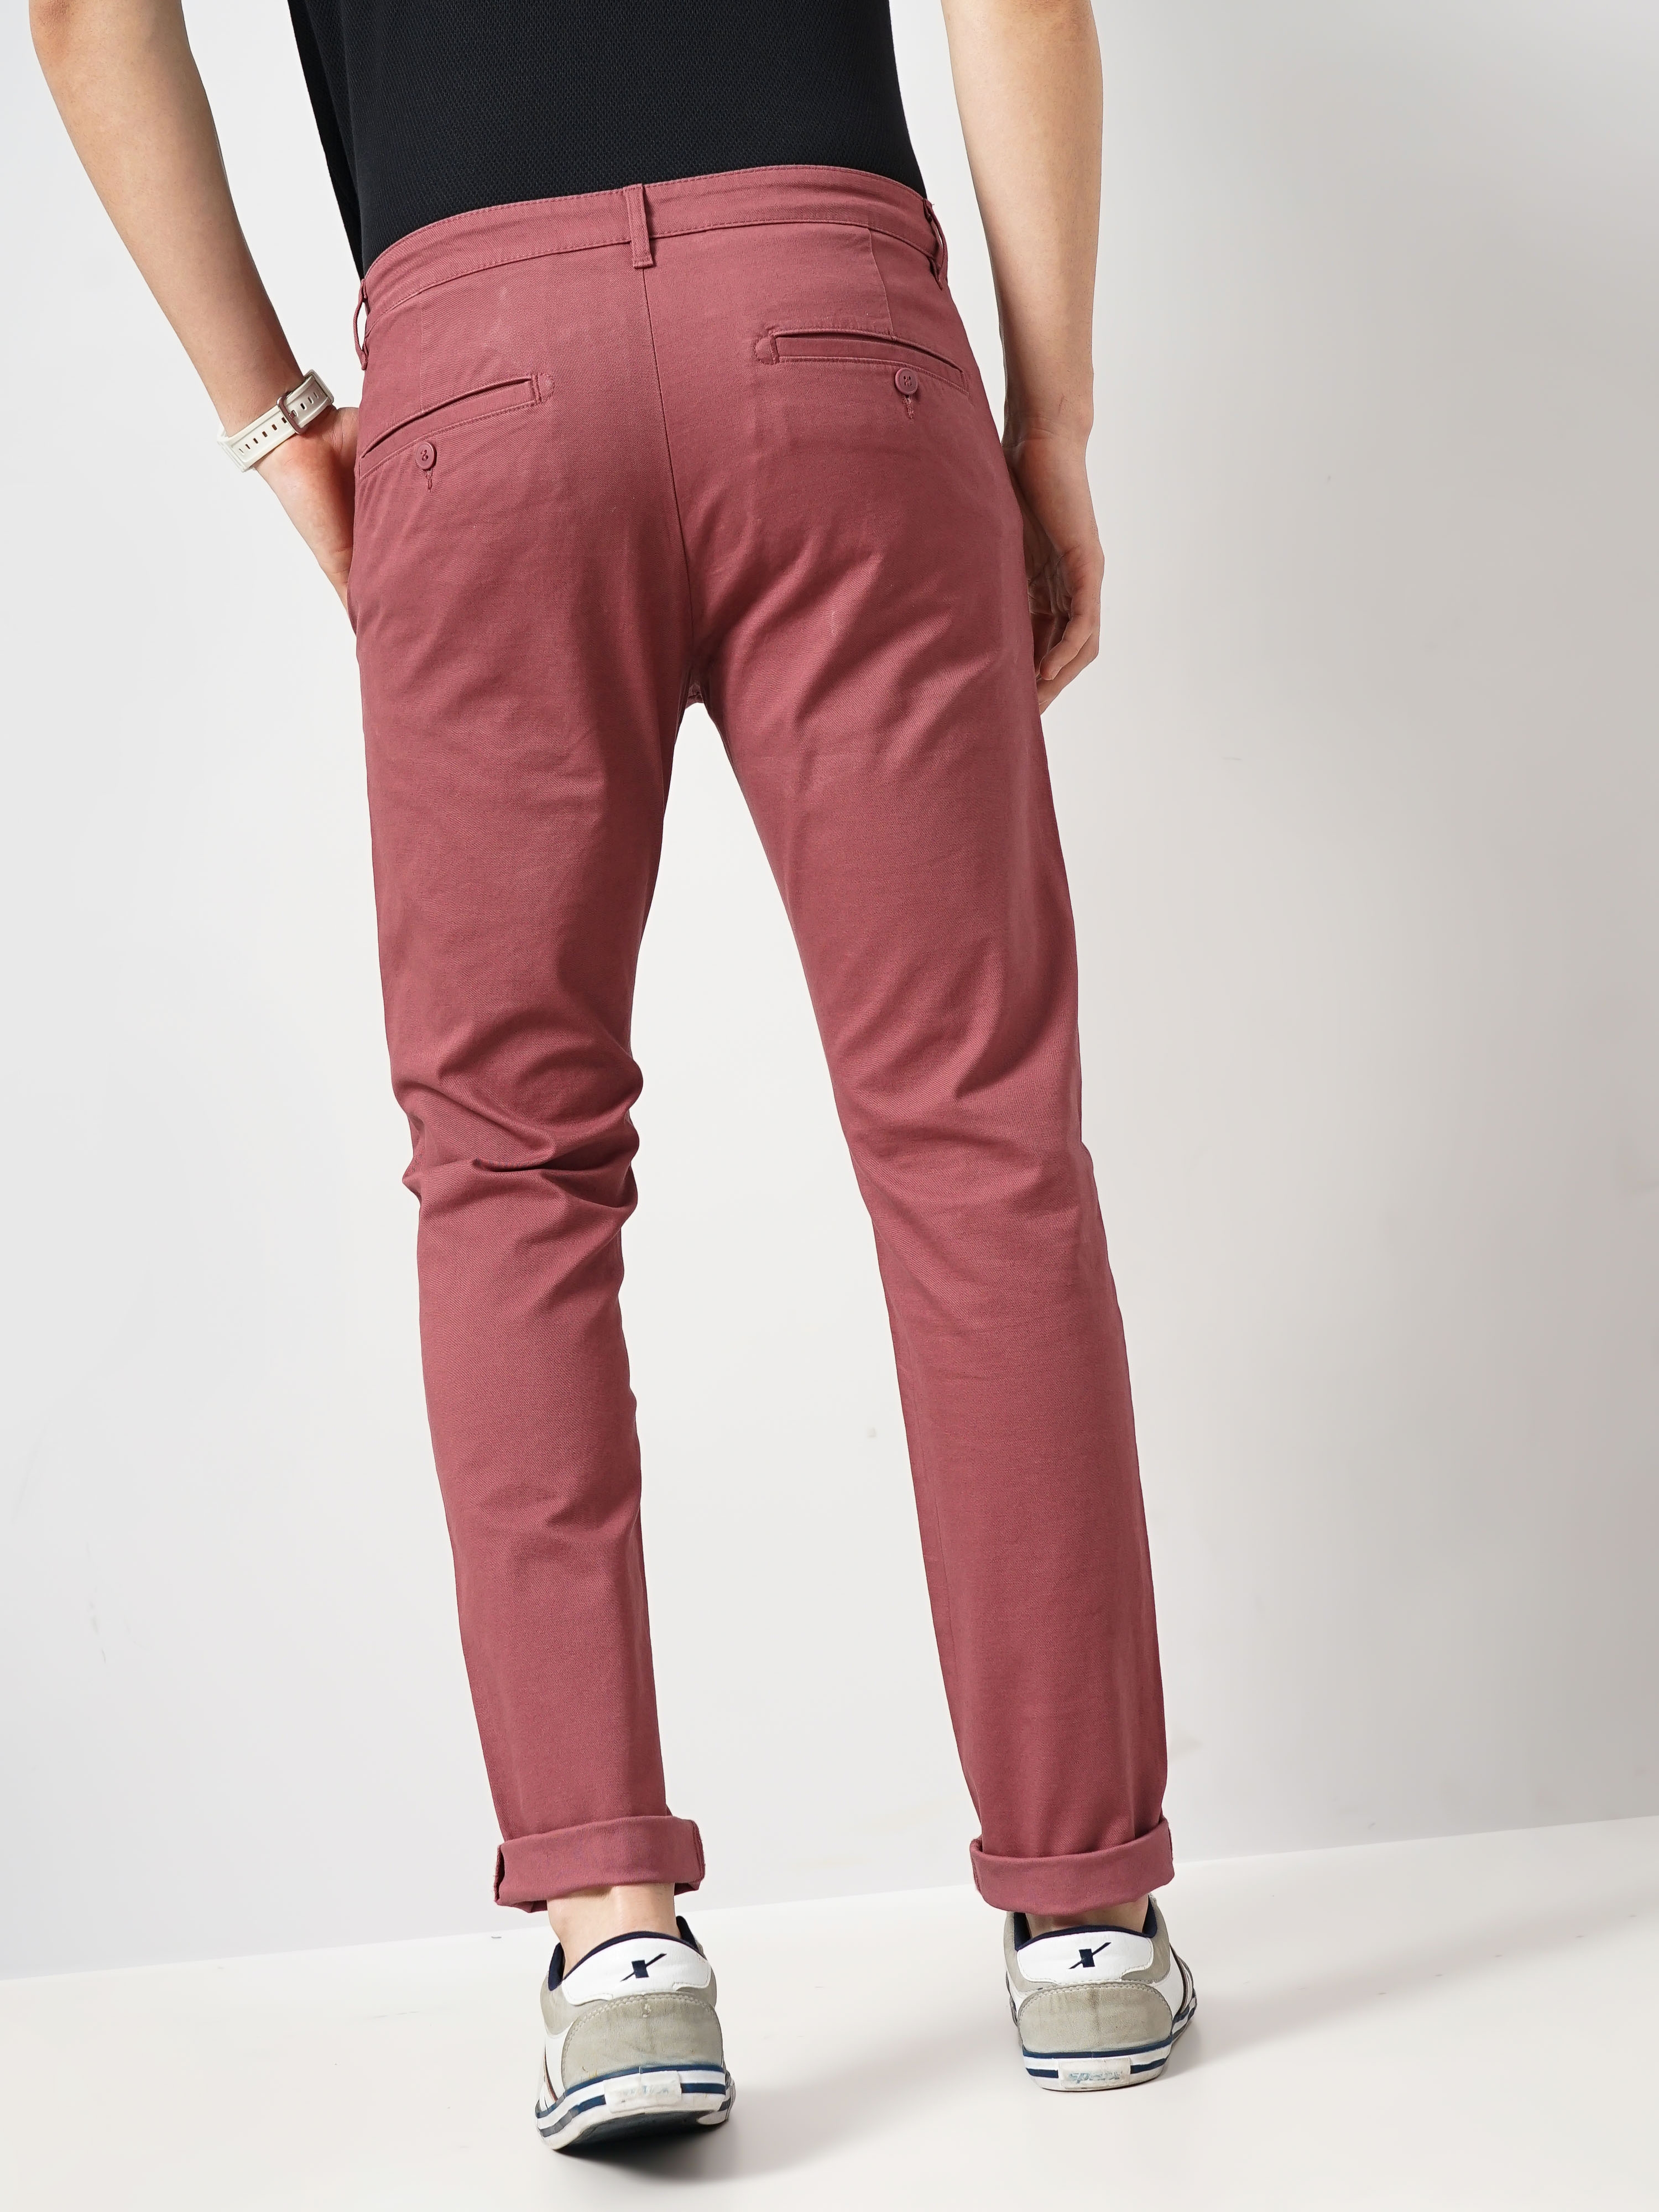 Cargo Pants for Men Mens Pajama Pants Fashion Men Casual Work Cotton Blend  Pure Elastic Waist Long Pants Trousers Work Pants for Men Sweatpants for Men  - Walmart.com